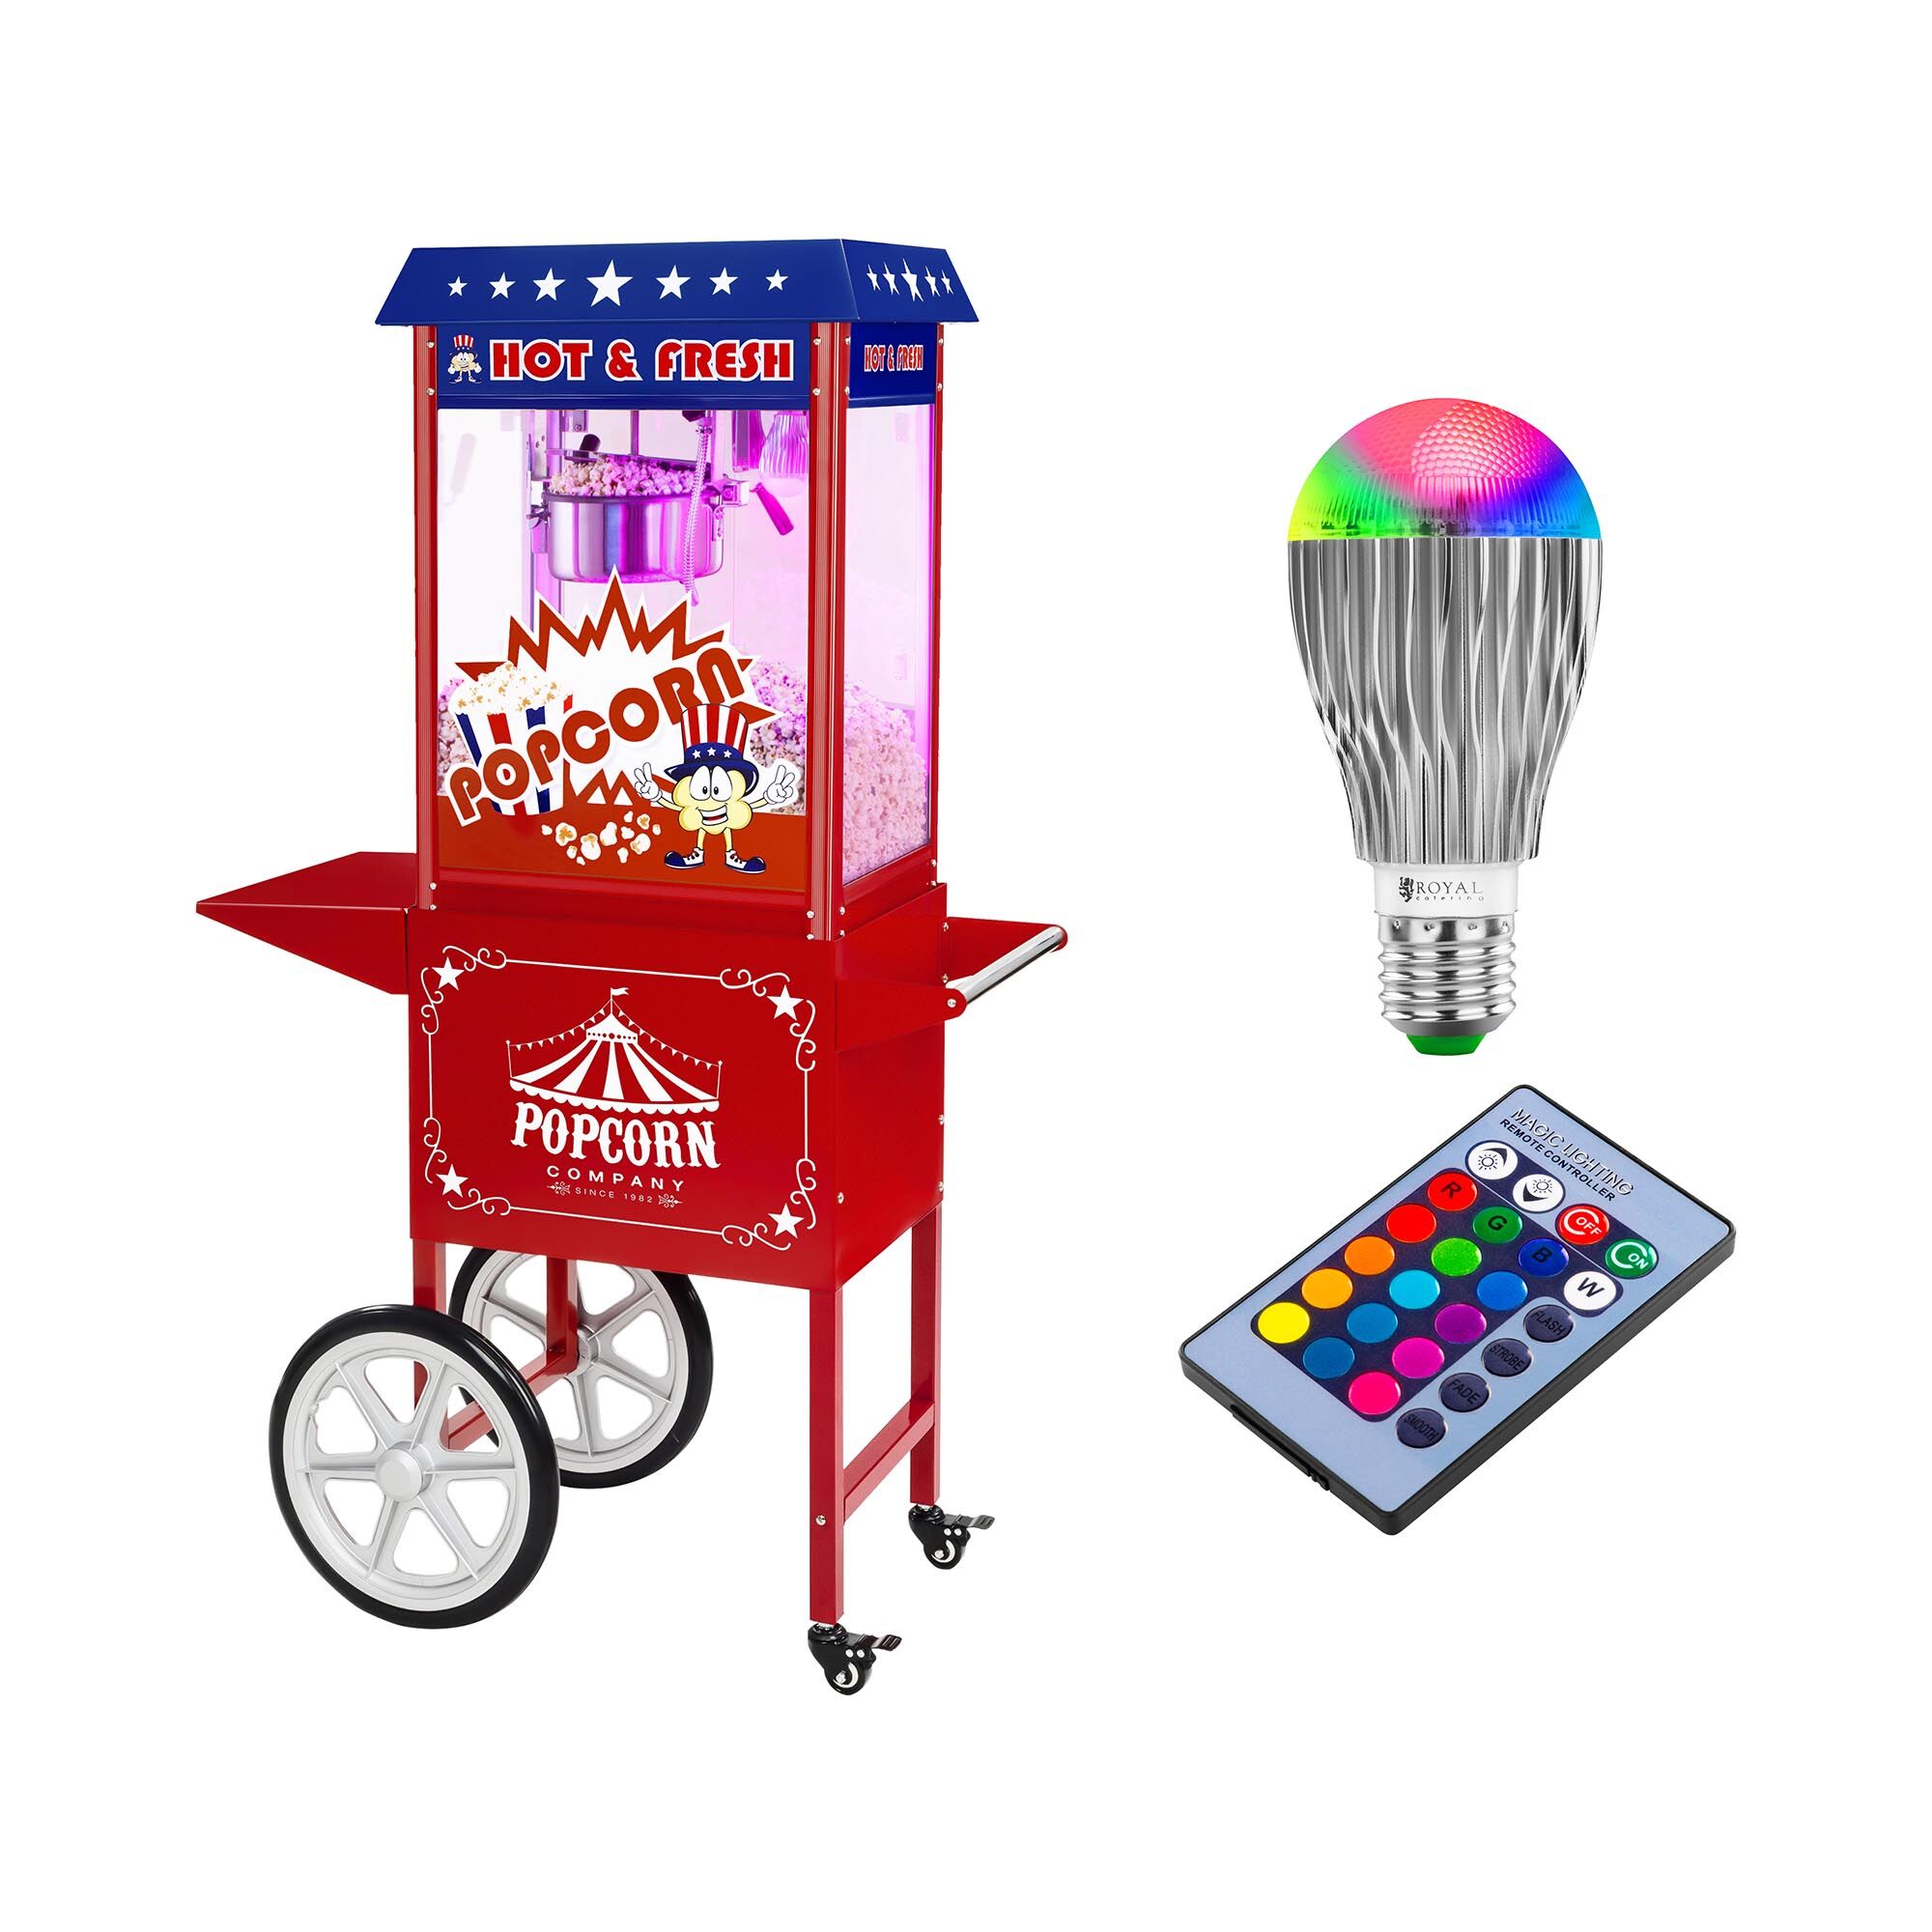 Royal Catering Stroj na popkorn s vozíkem a LED osvětlením - USA design - červený RCPW-16.1 Popcorn Machine LED Set